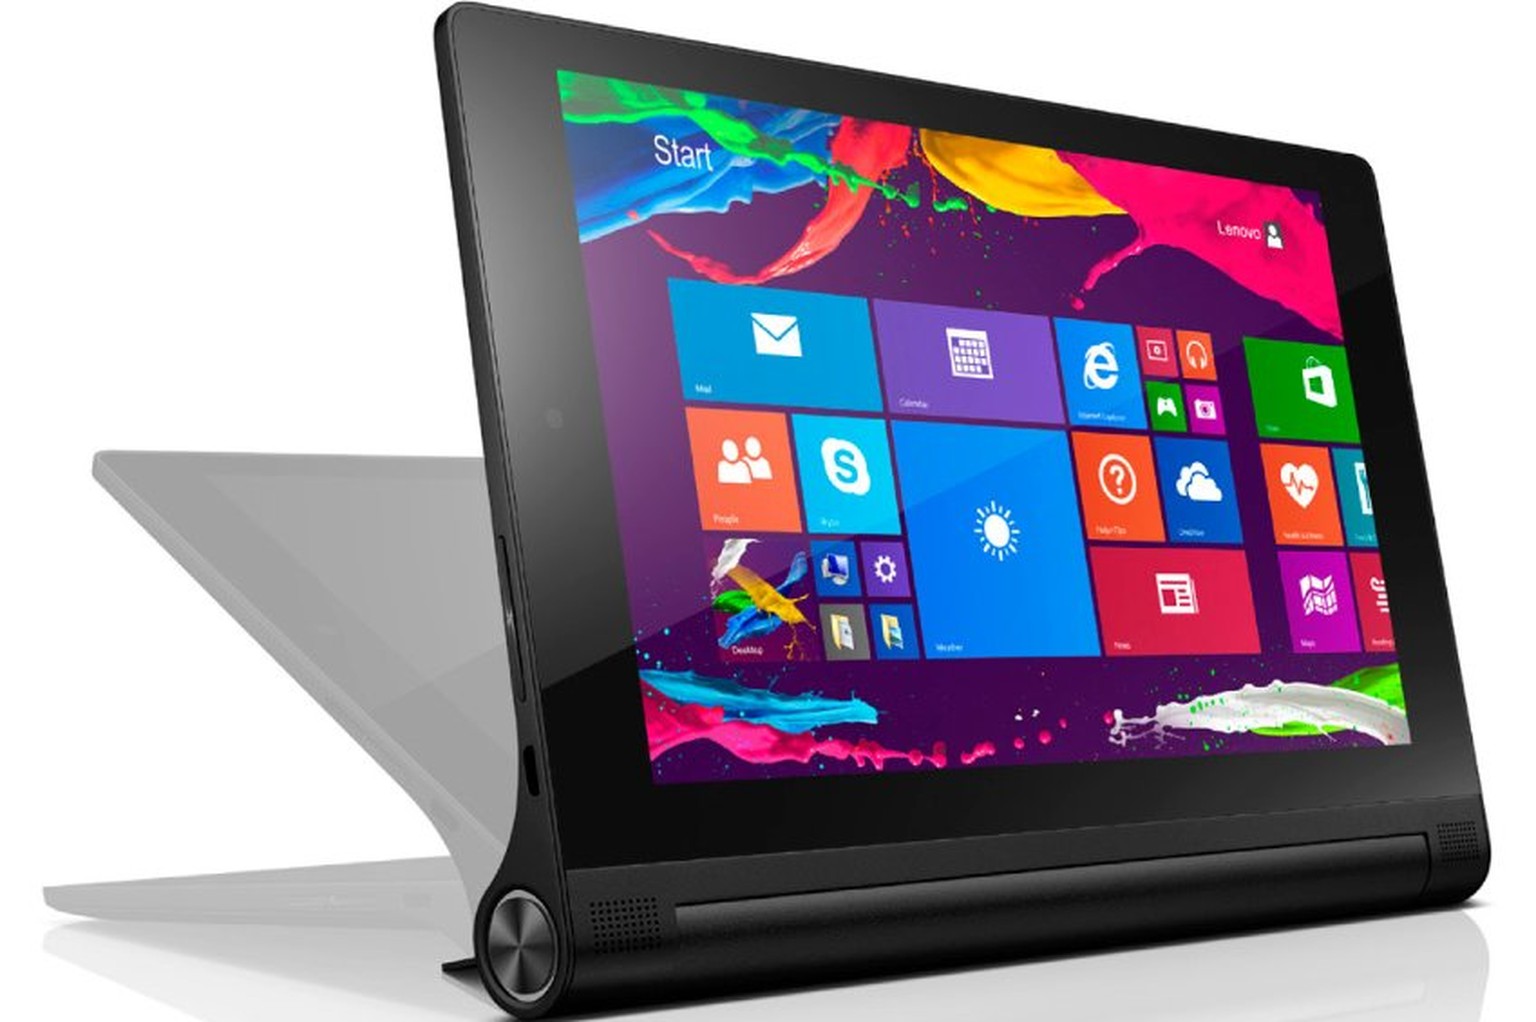 Lenovo Yoga Tablet 2: In der neuen Version von einem Intel-Atom-Prozessor angetrieben, kann man es wahlweise mit Android 4.4 oder mit Windows 8.1 kaufen.